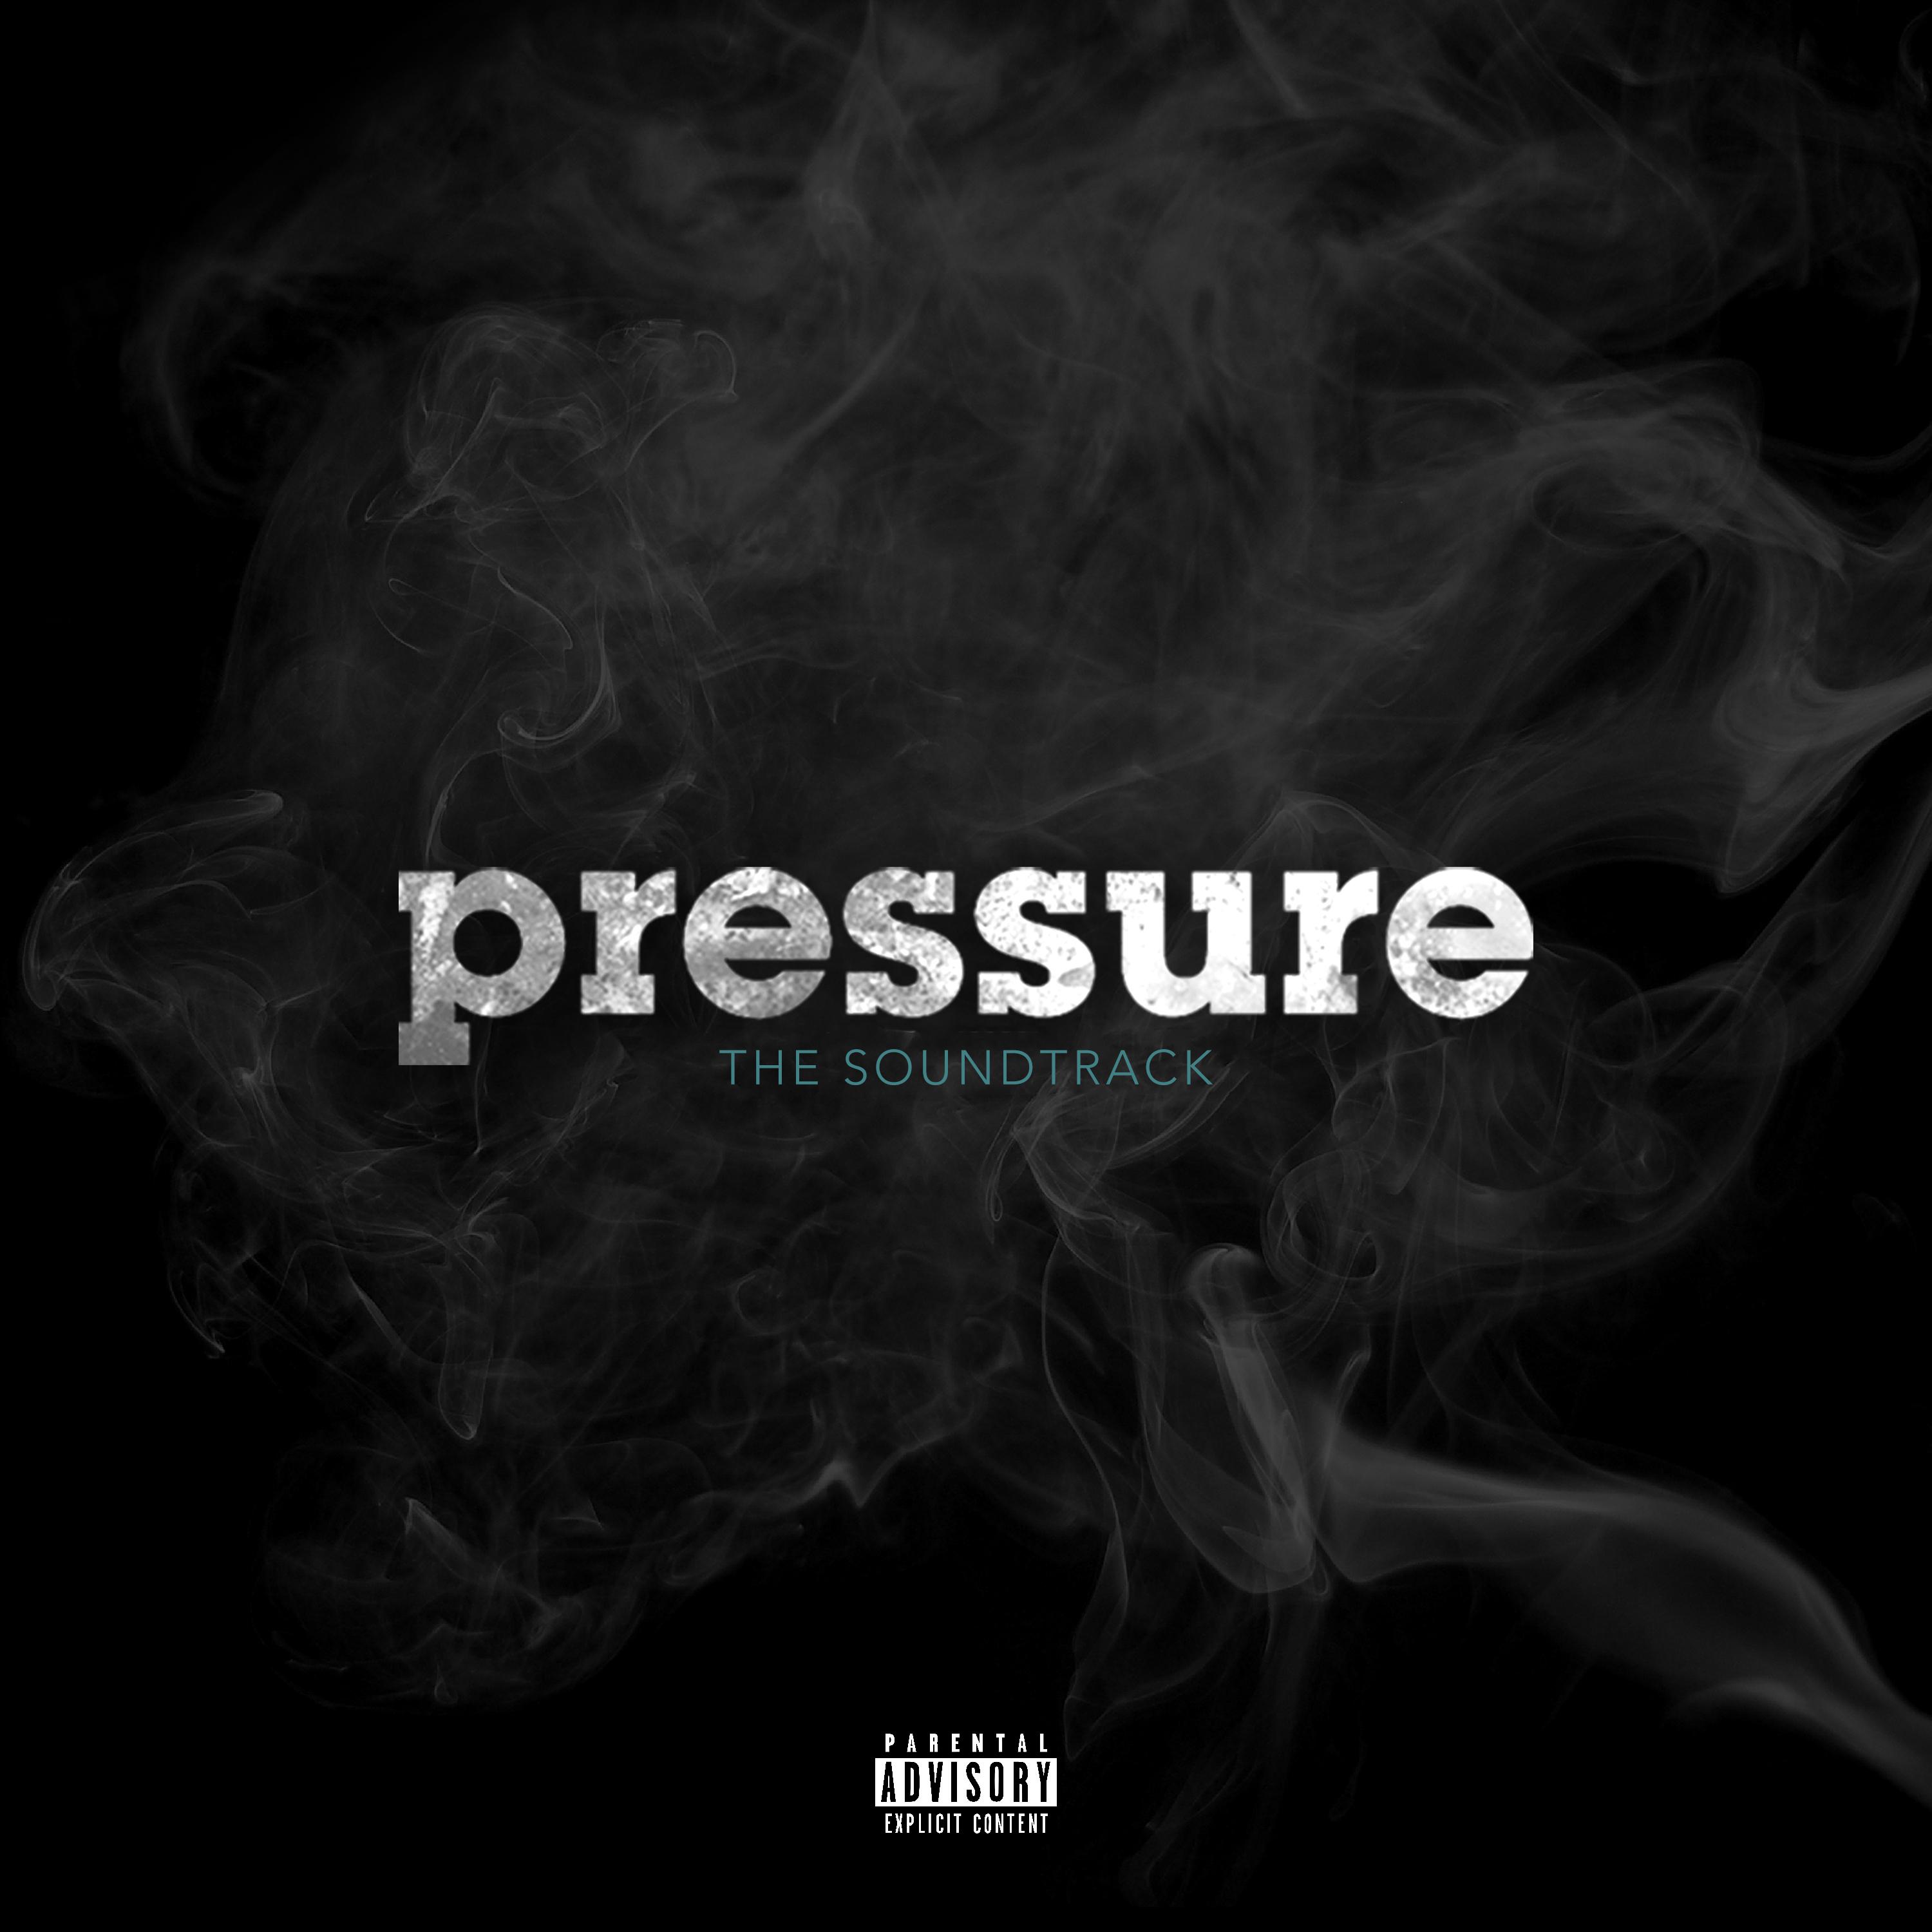 Pressure: The Soundtrack